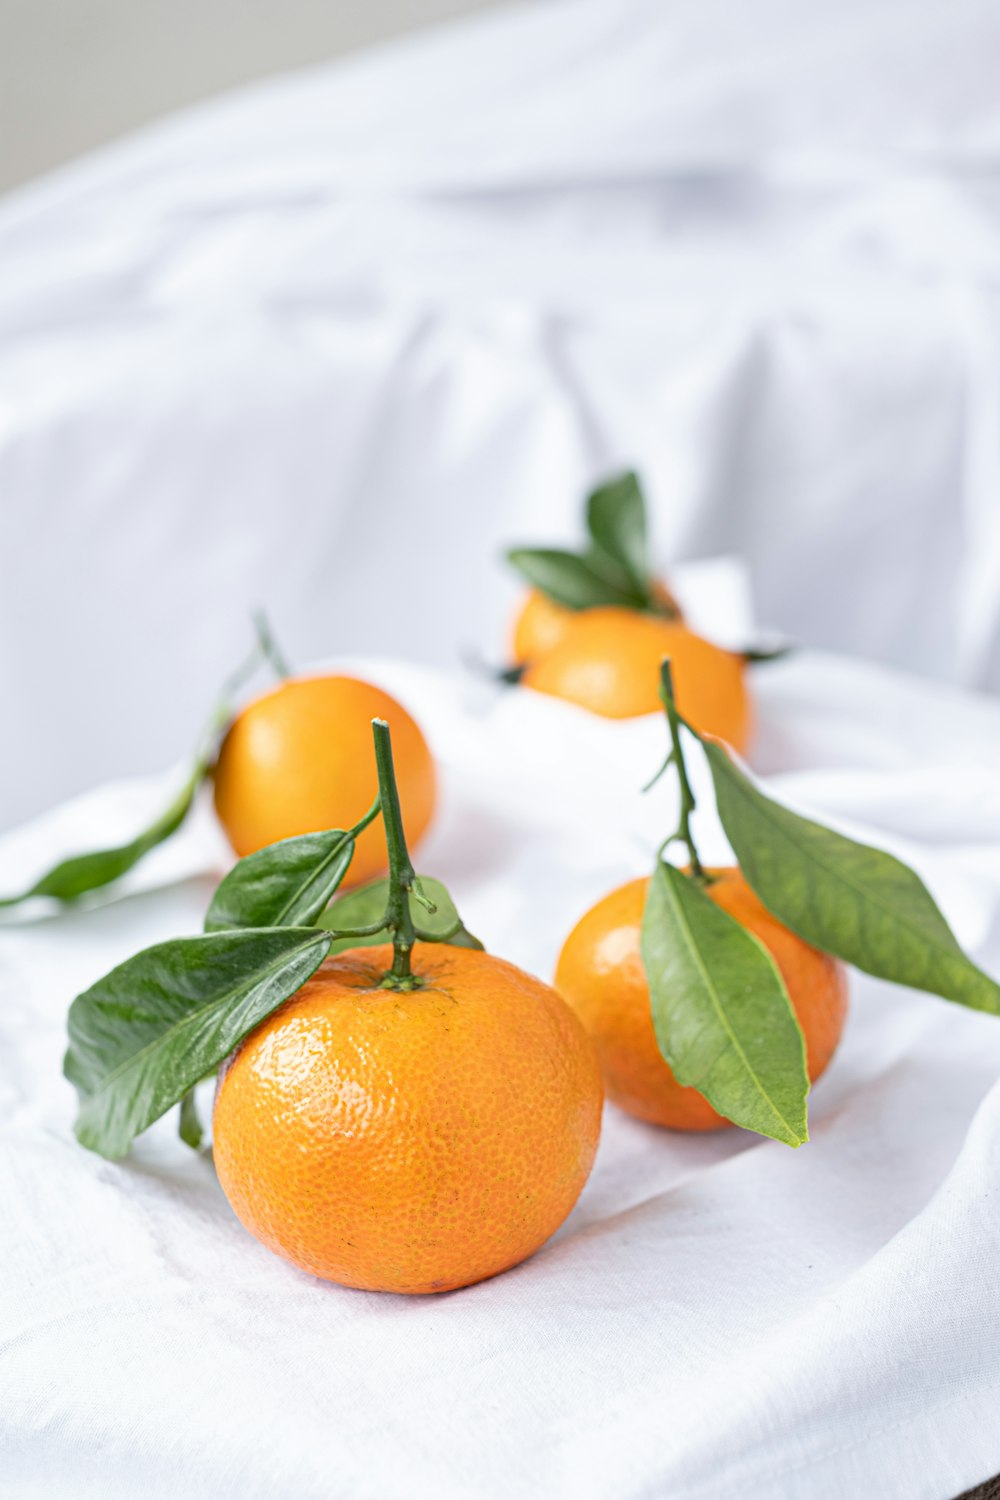 orange fruit on white textile